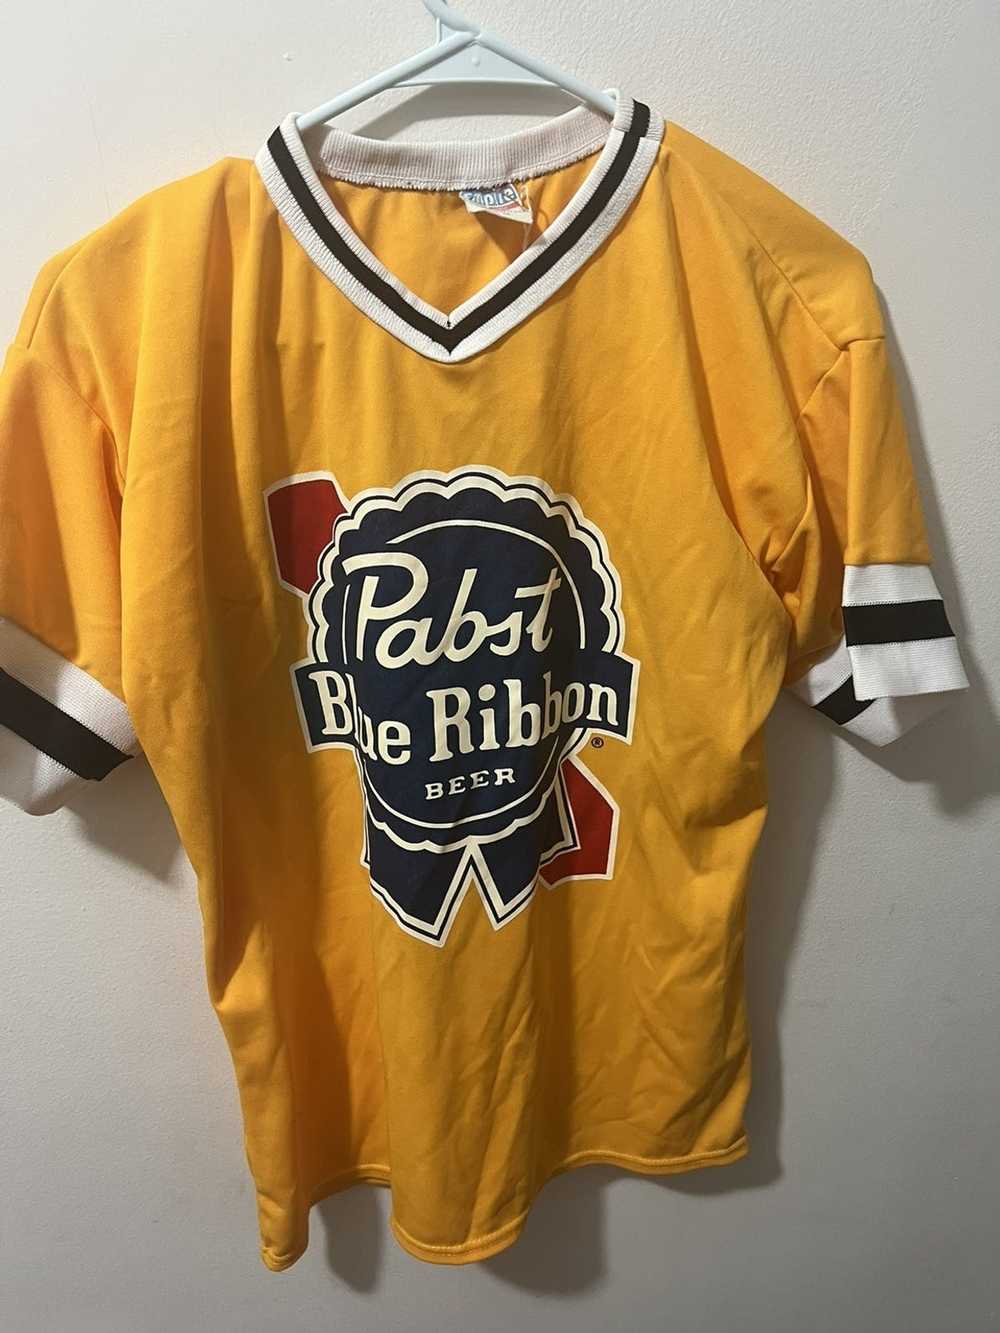 Vintage Vintage Pabst Blue Ribbon jersey large - image 1